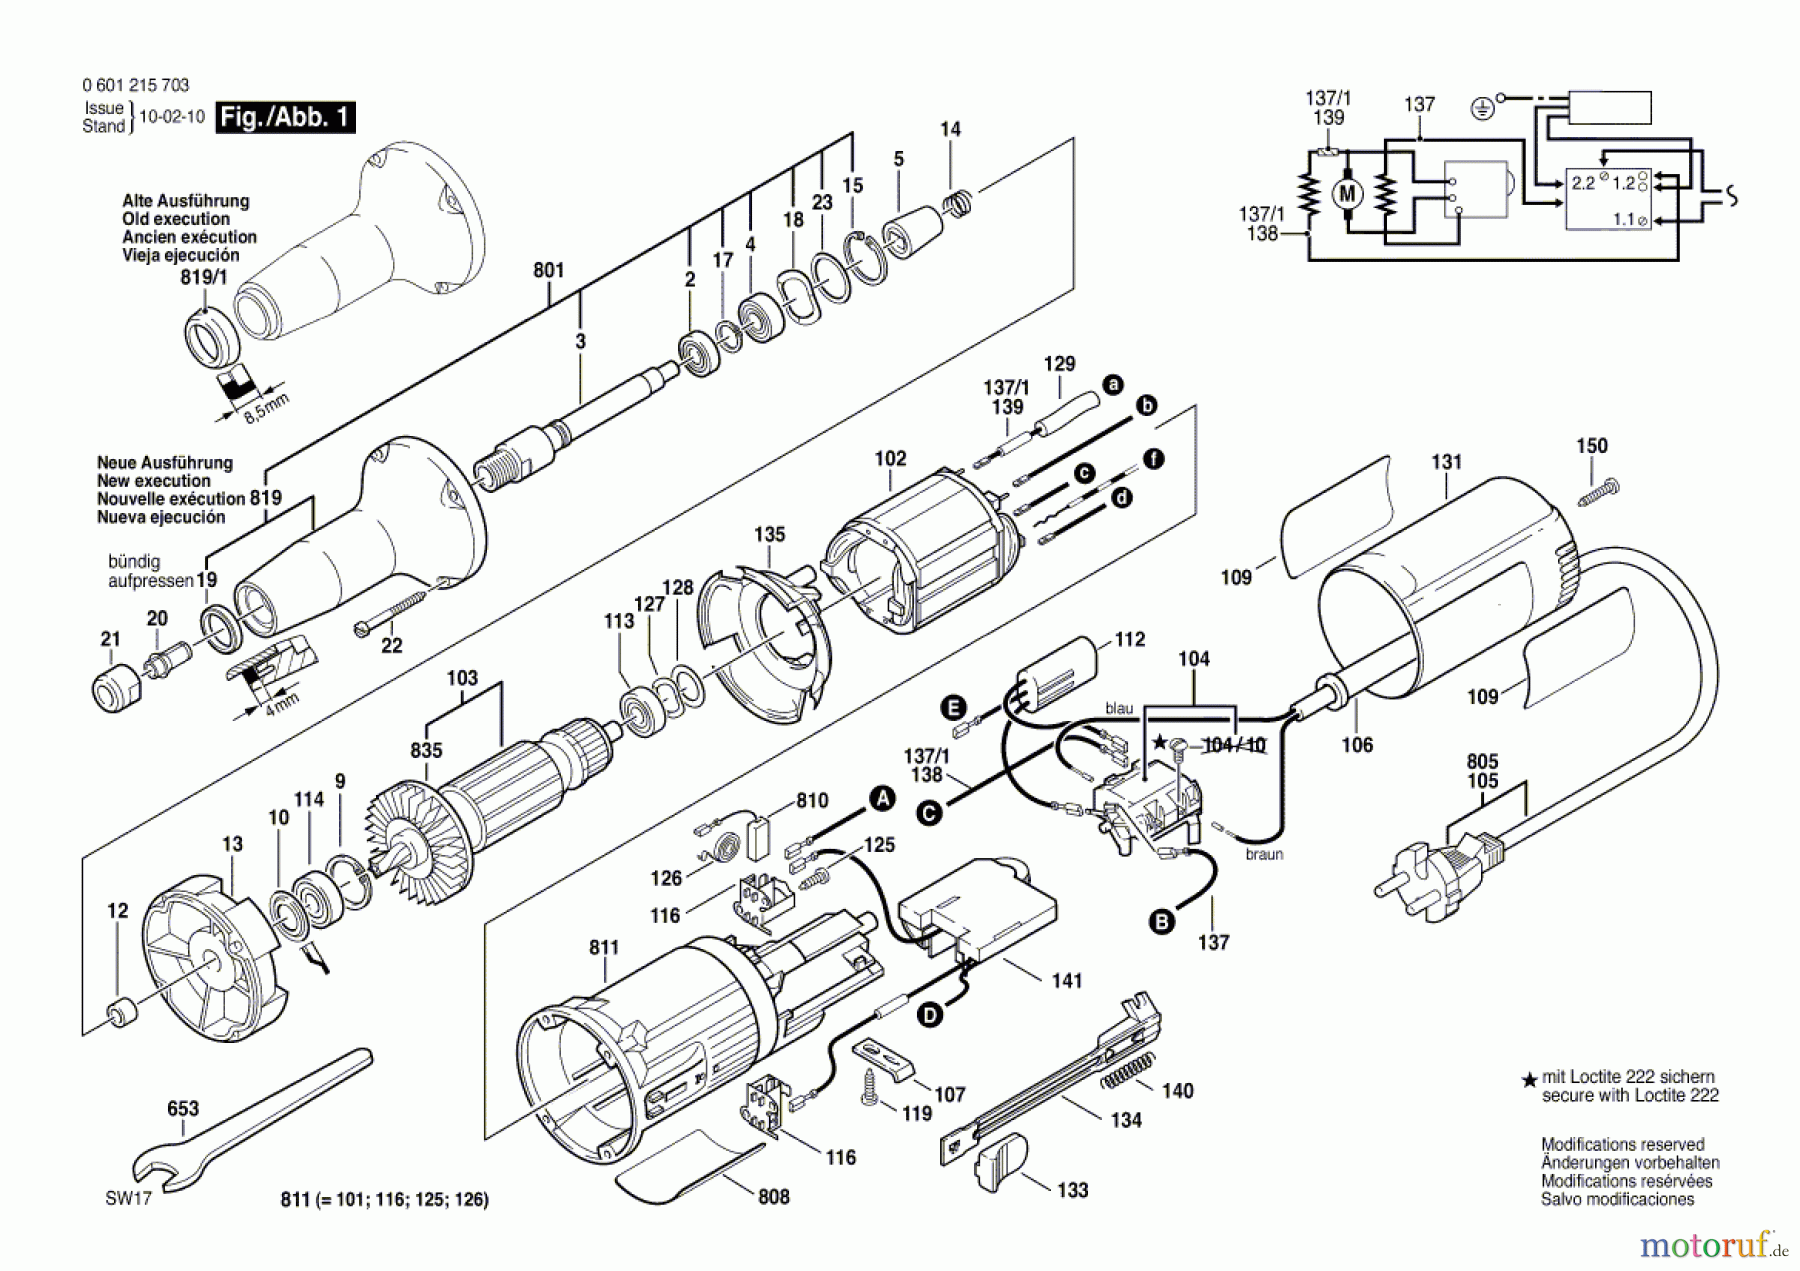  Bosch Werkzeug Geradschleifer GGS 27 LC Seite 1